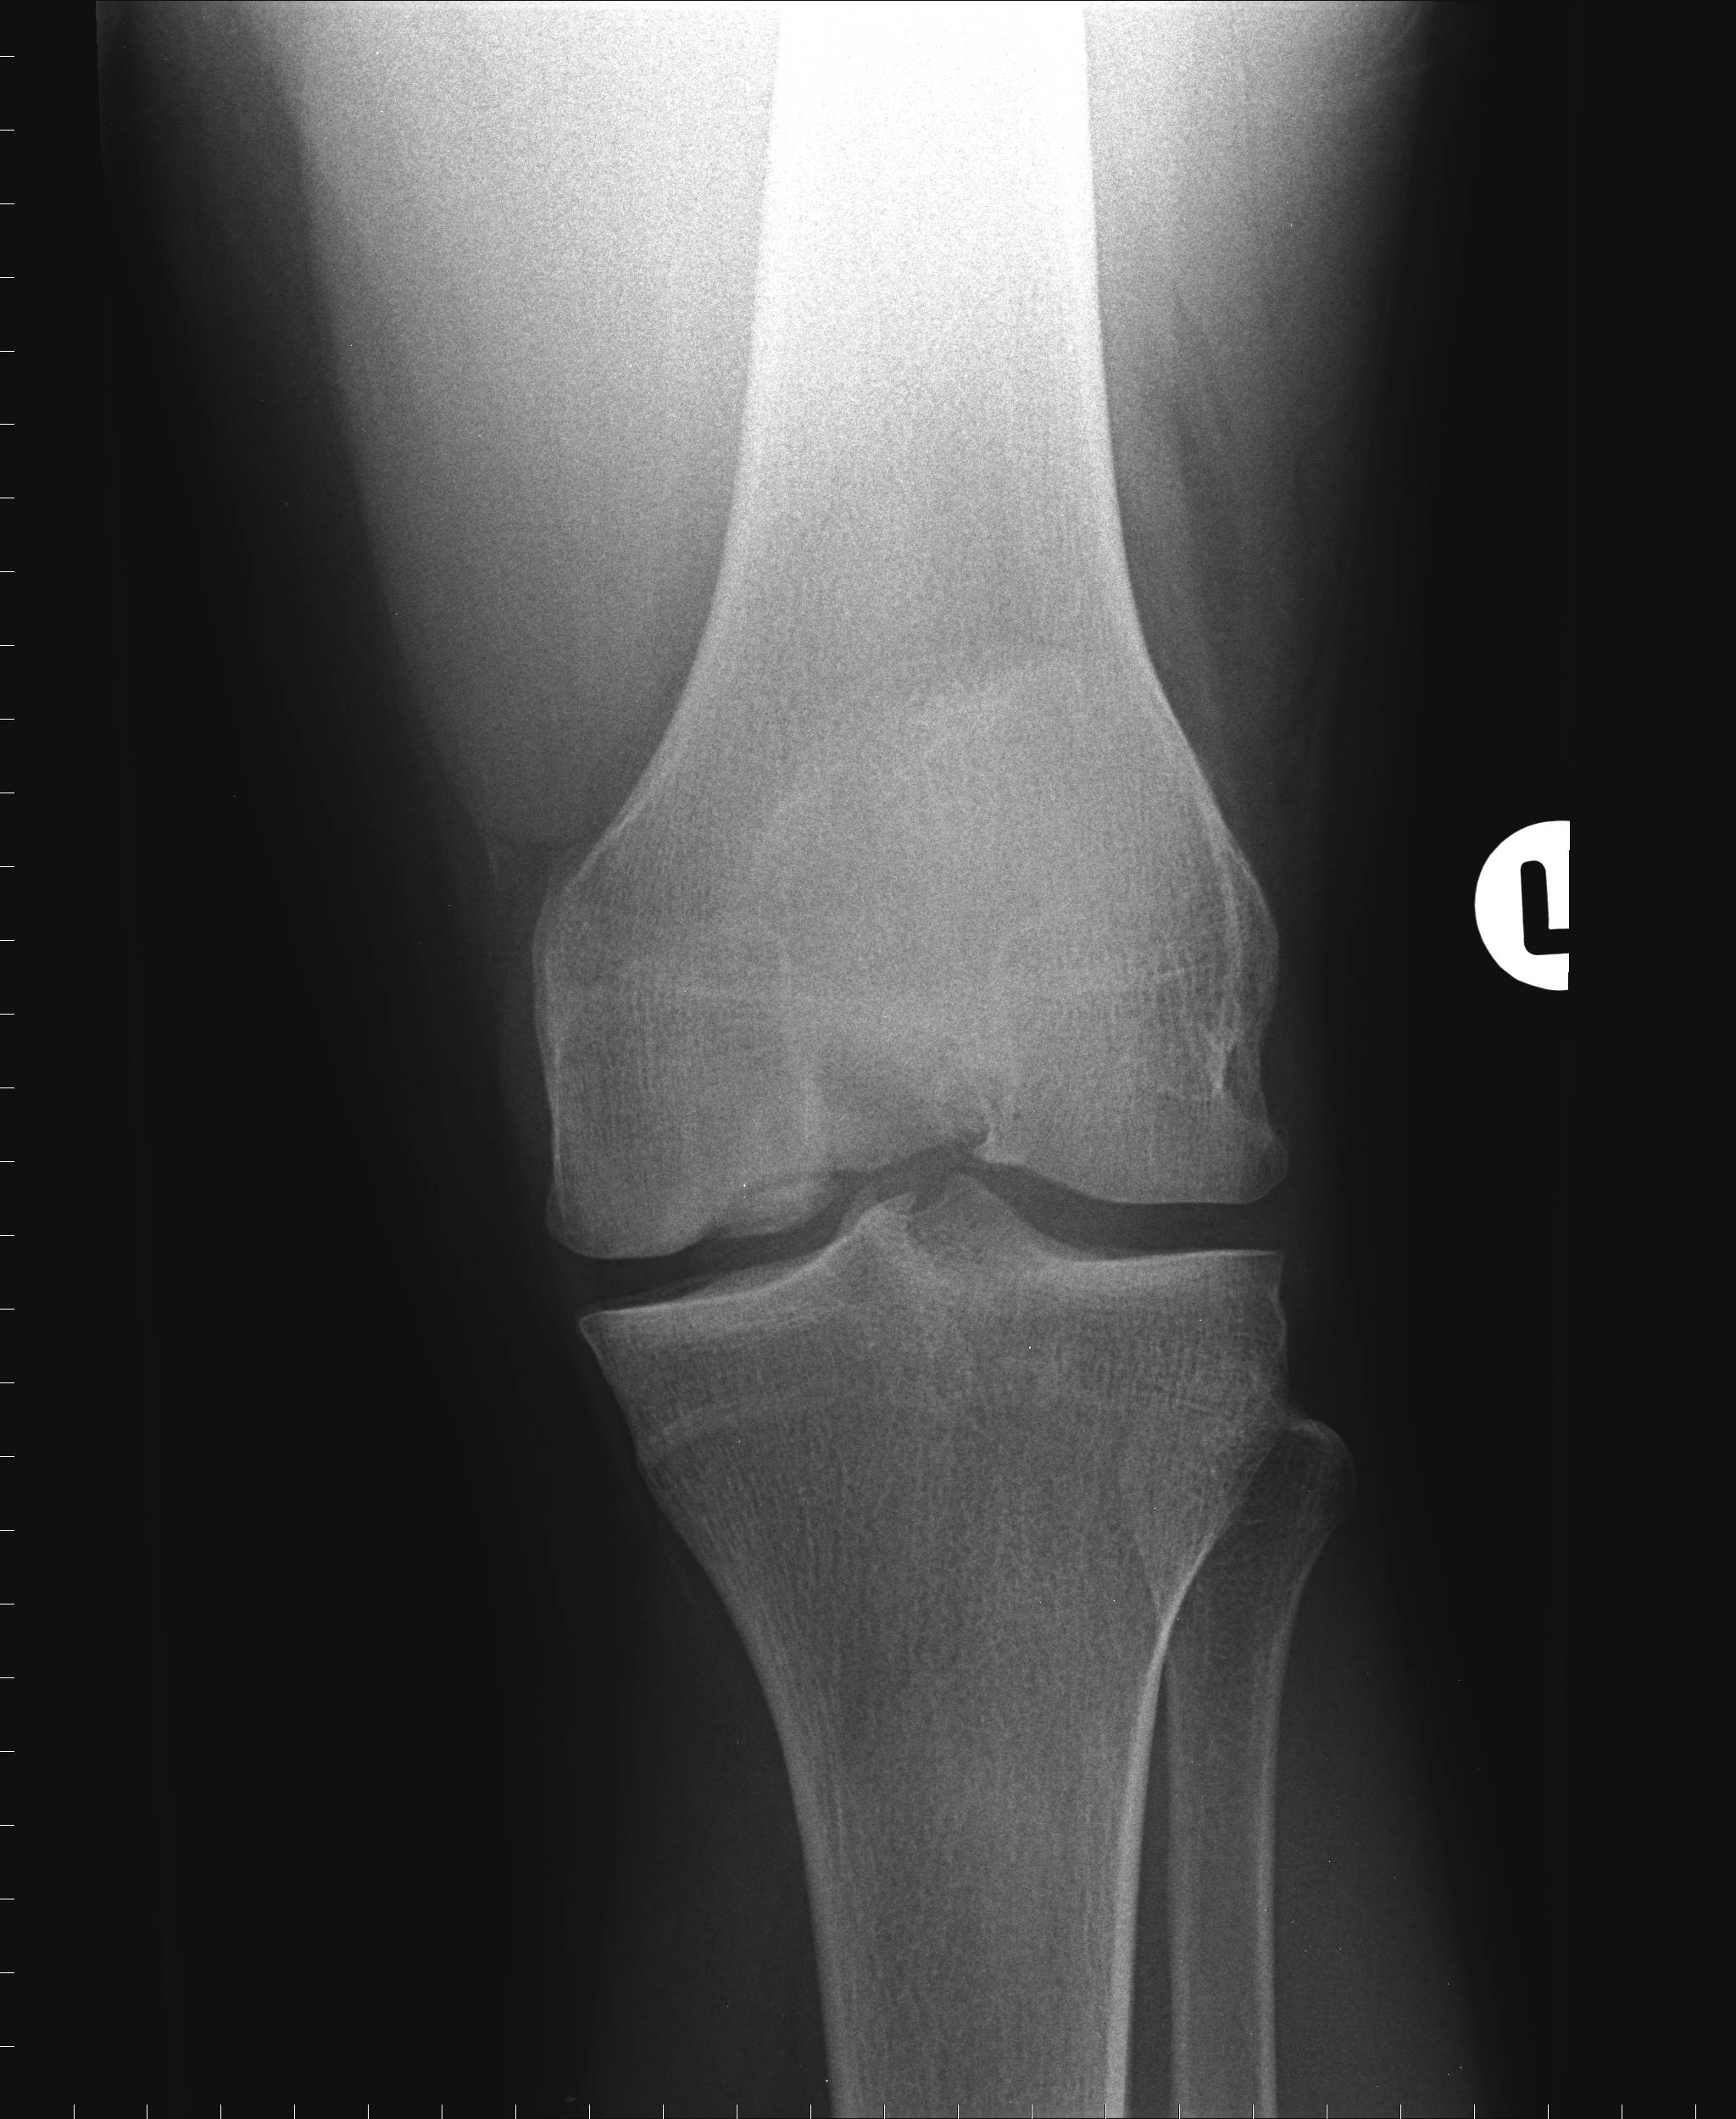 Болезнь кенига коленного сустава: ее особенности